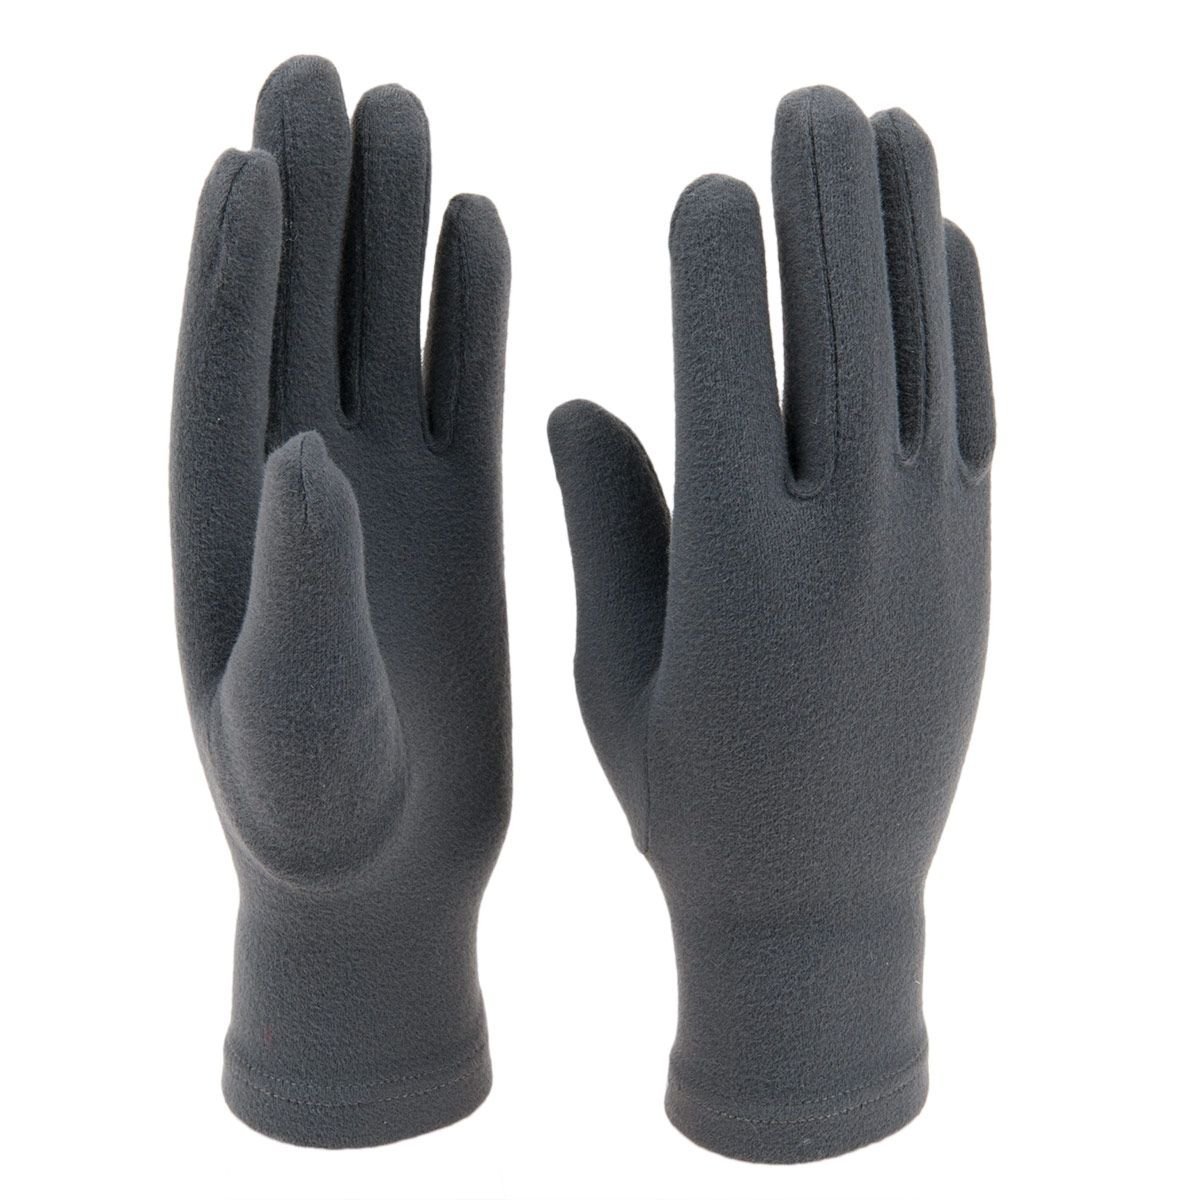 HONYAR Stricken Handschuhe Touchscreen Herren Damen Weich Warme Gefüttert Elastische Manschette 6 Farben